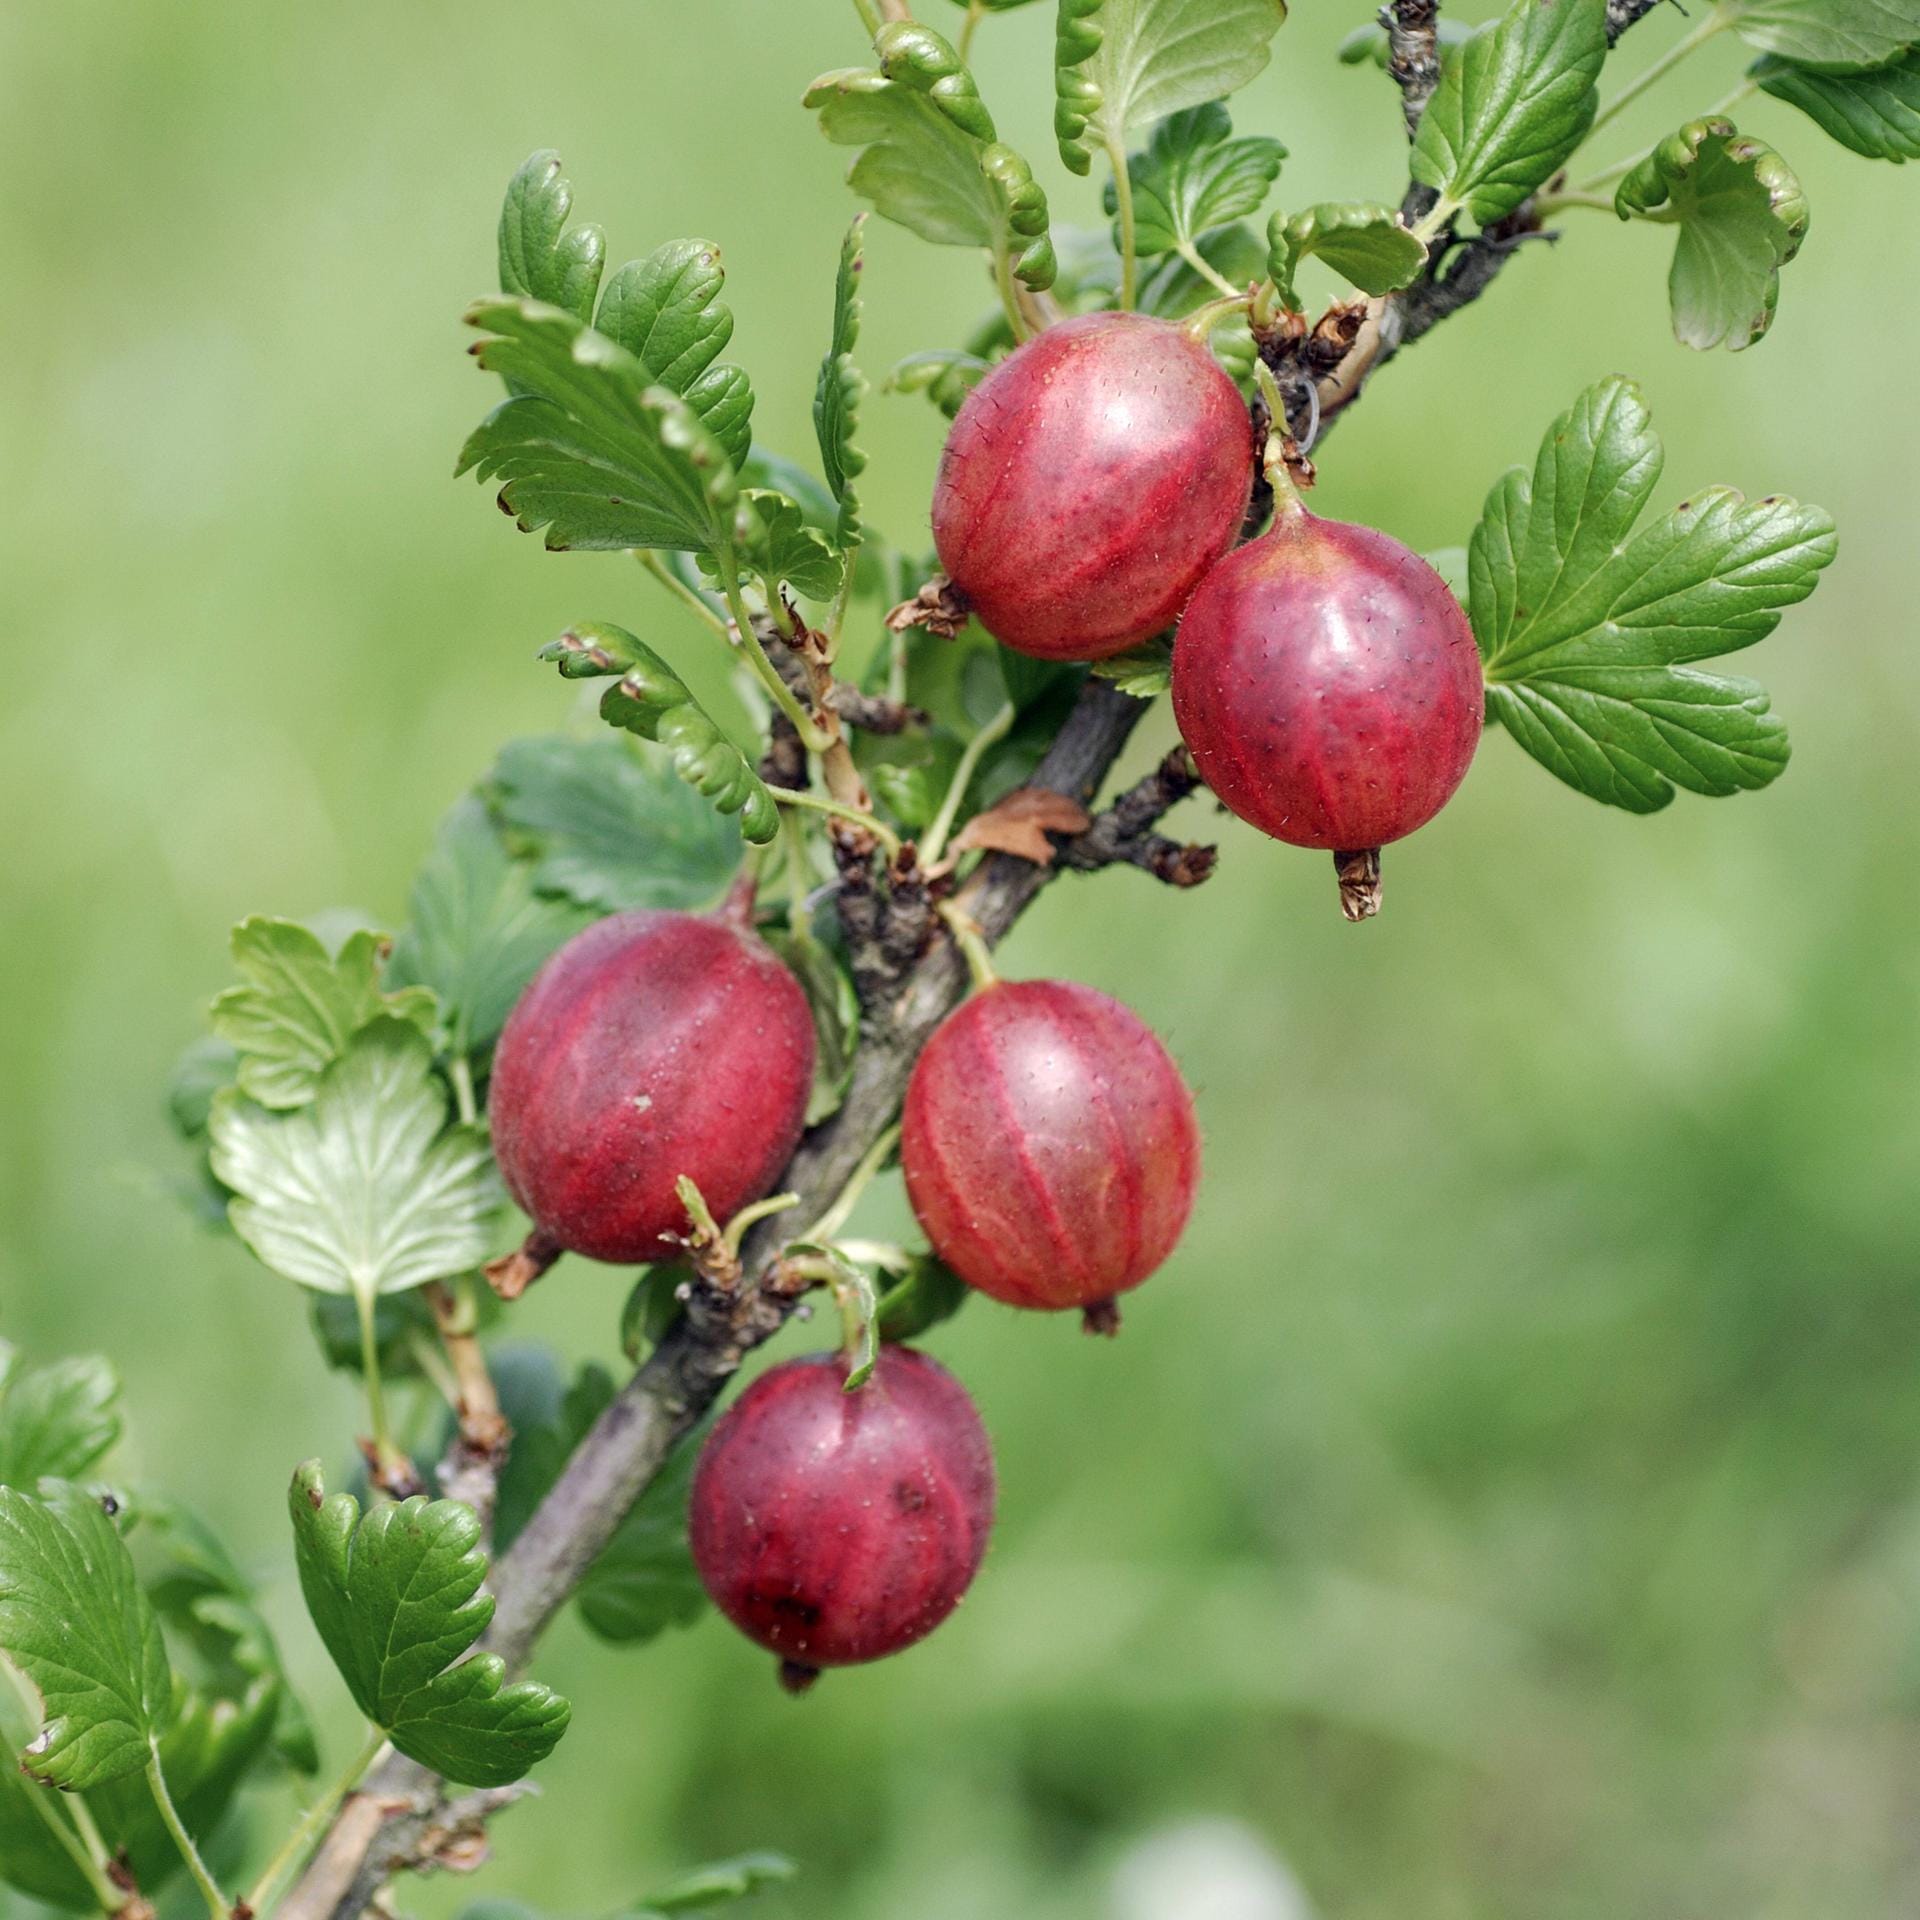 Stachelbeere 'Pax': Diese rotfruchtige Sorte ist dornlos und kann als Strauch oder Hochstamm gepflanzt werden.